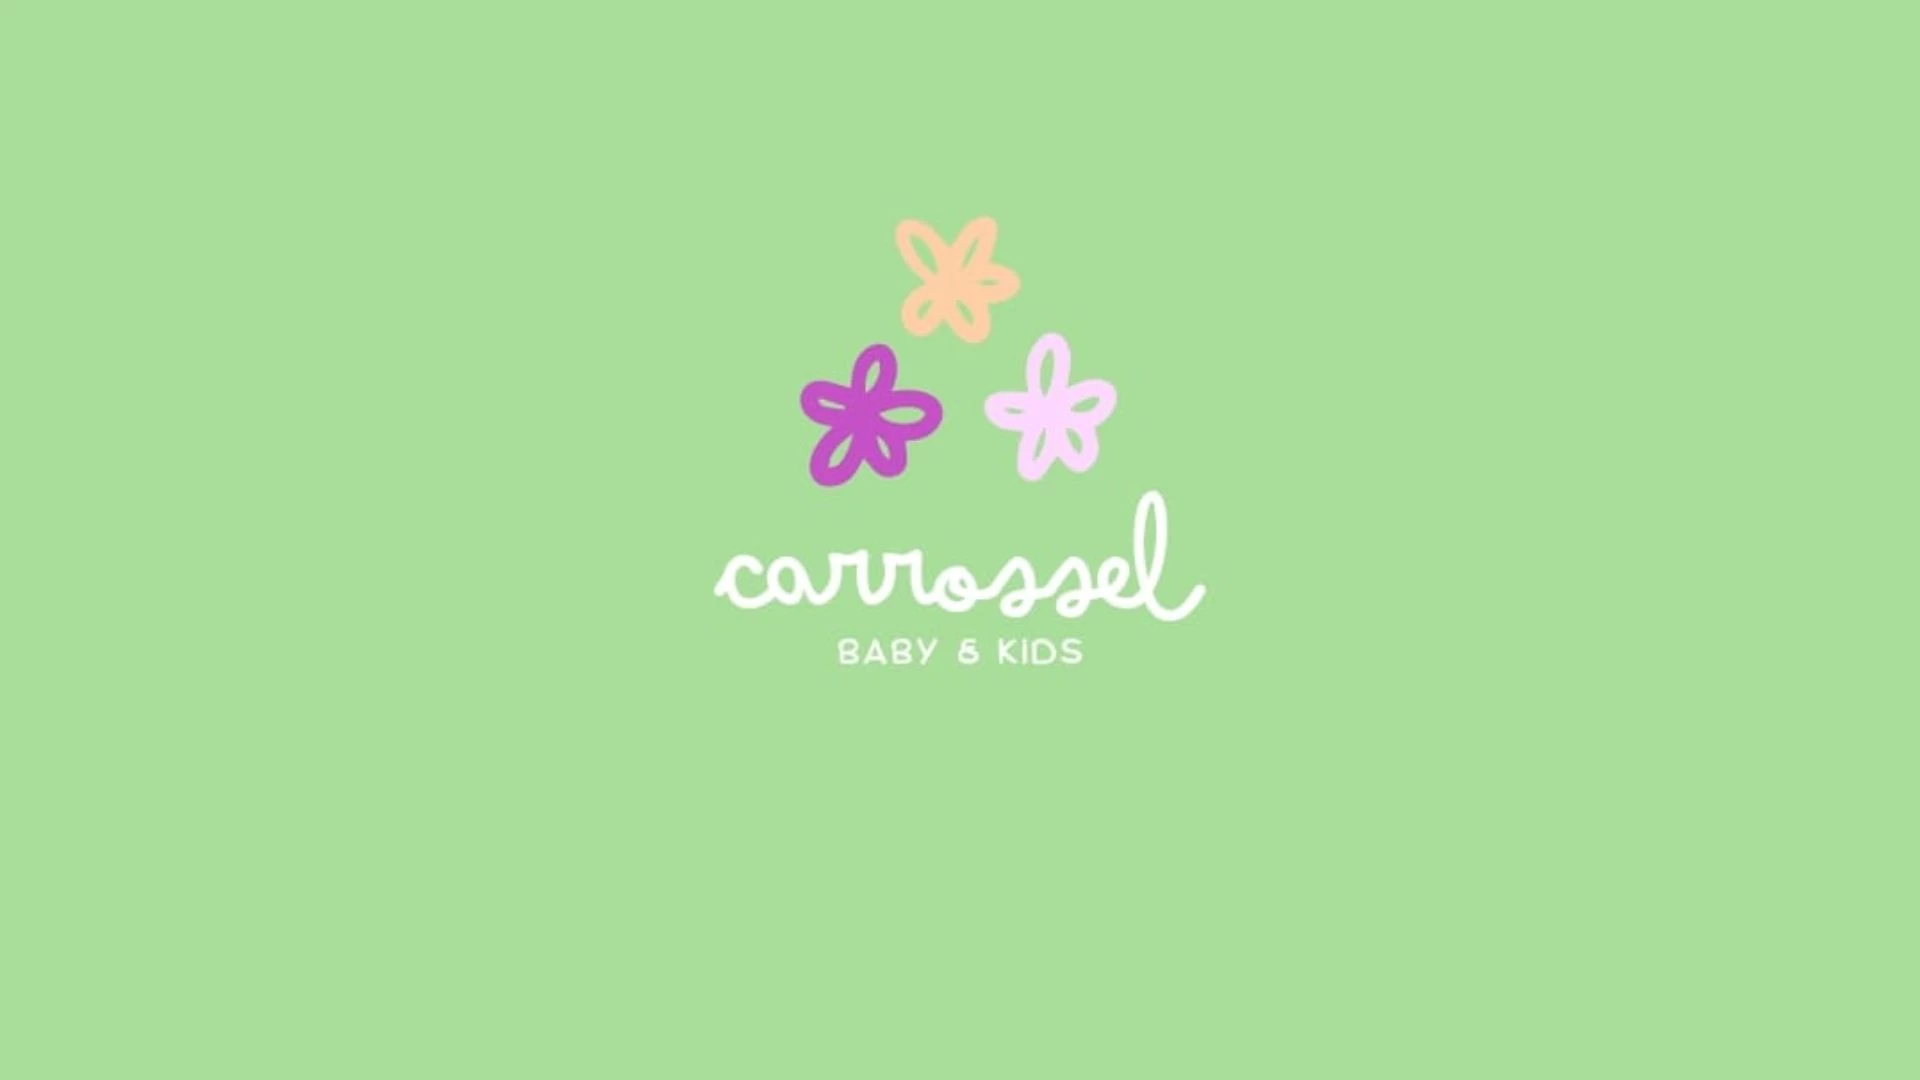 Carrossel Baby & Kids